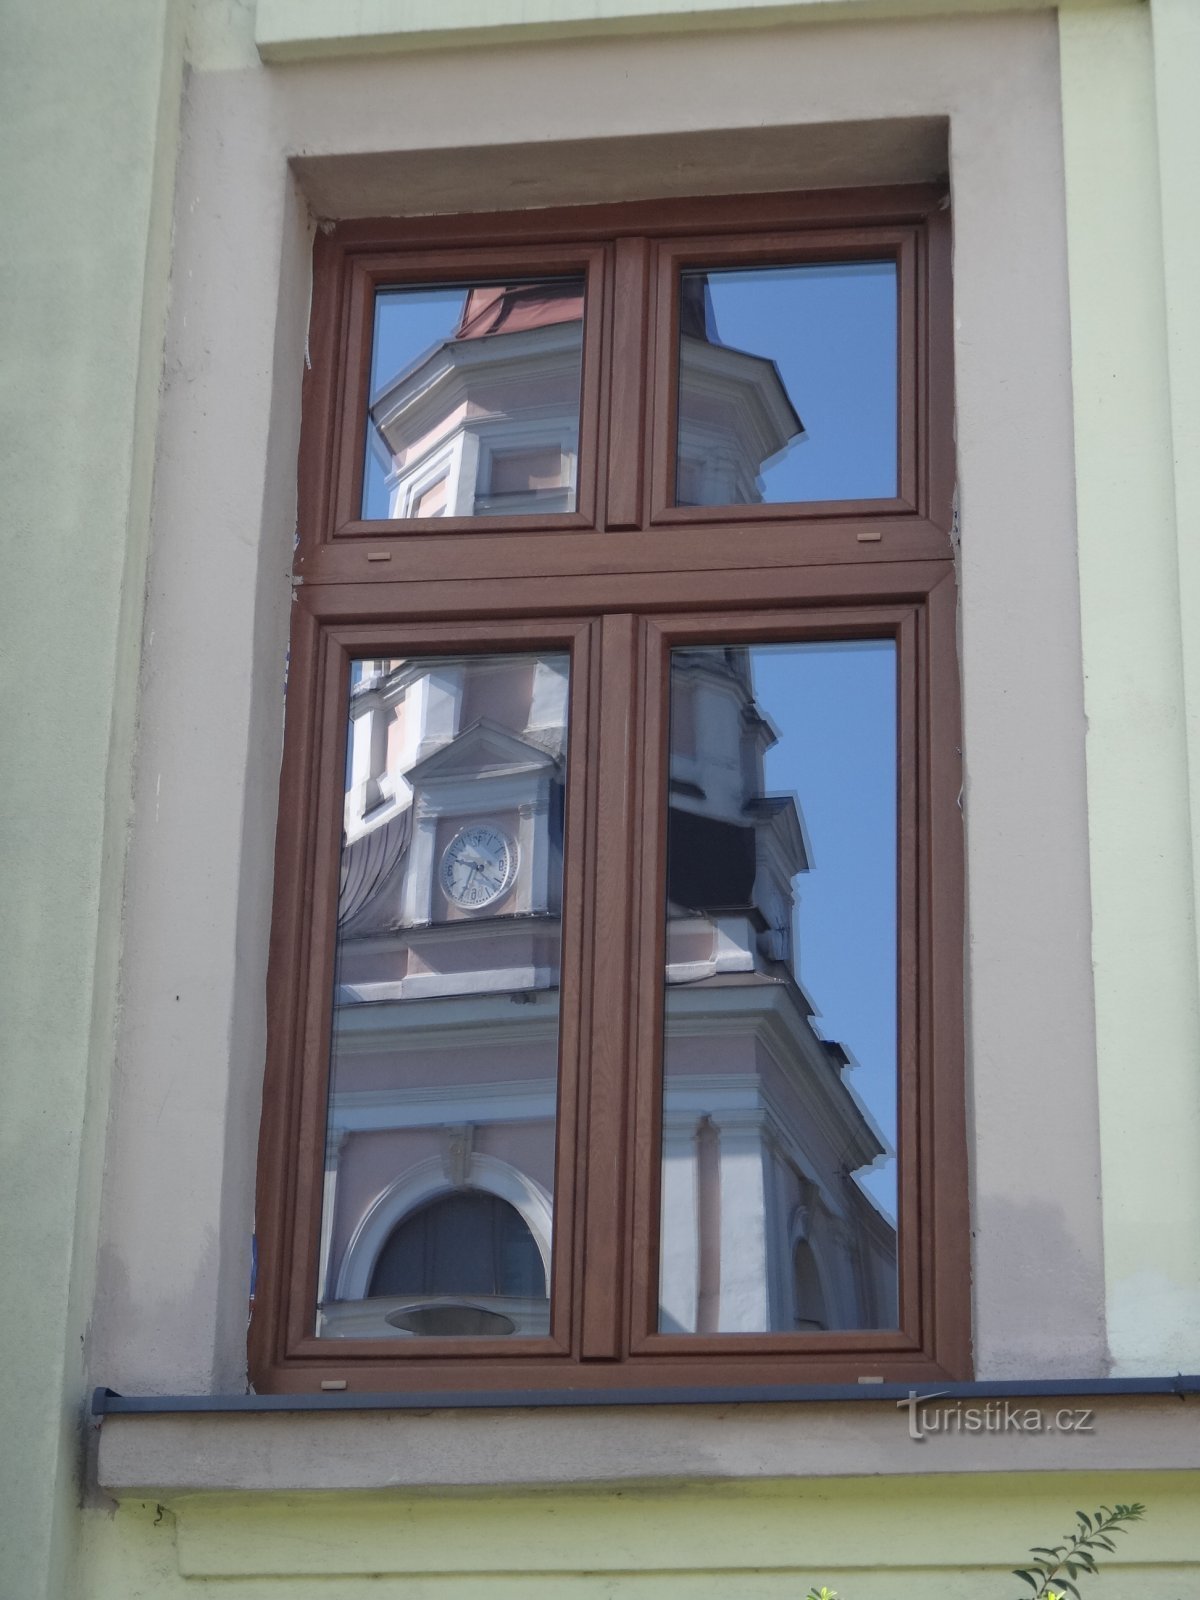 a templom tükörképe a városháza ablakaiban